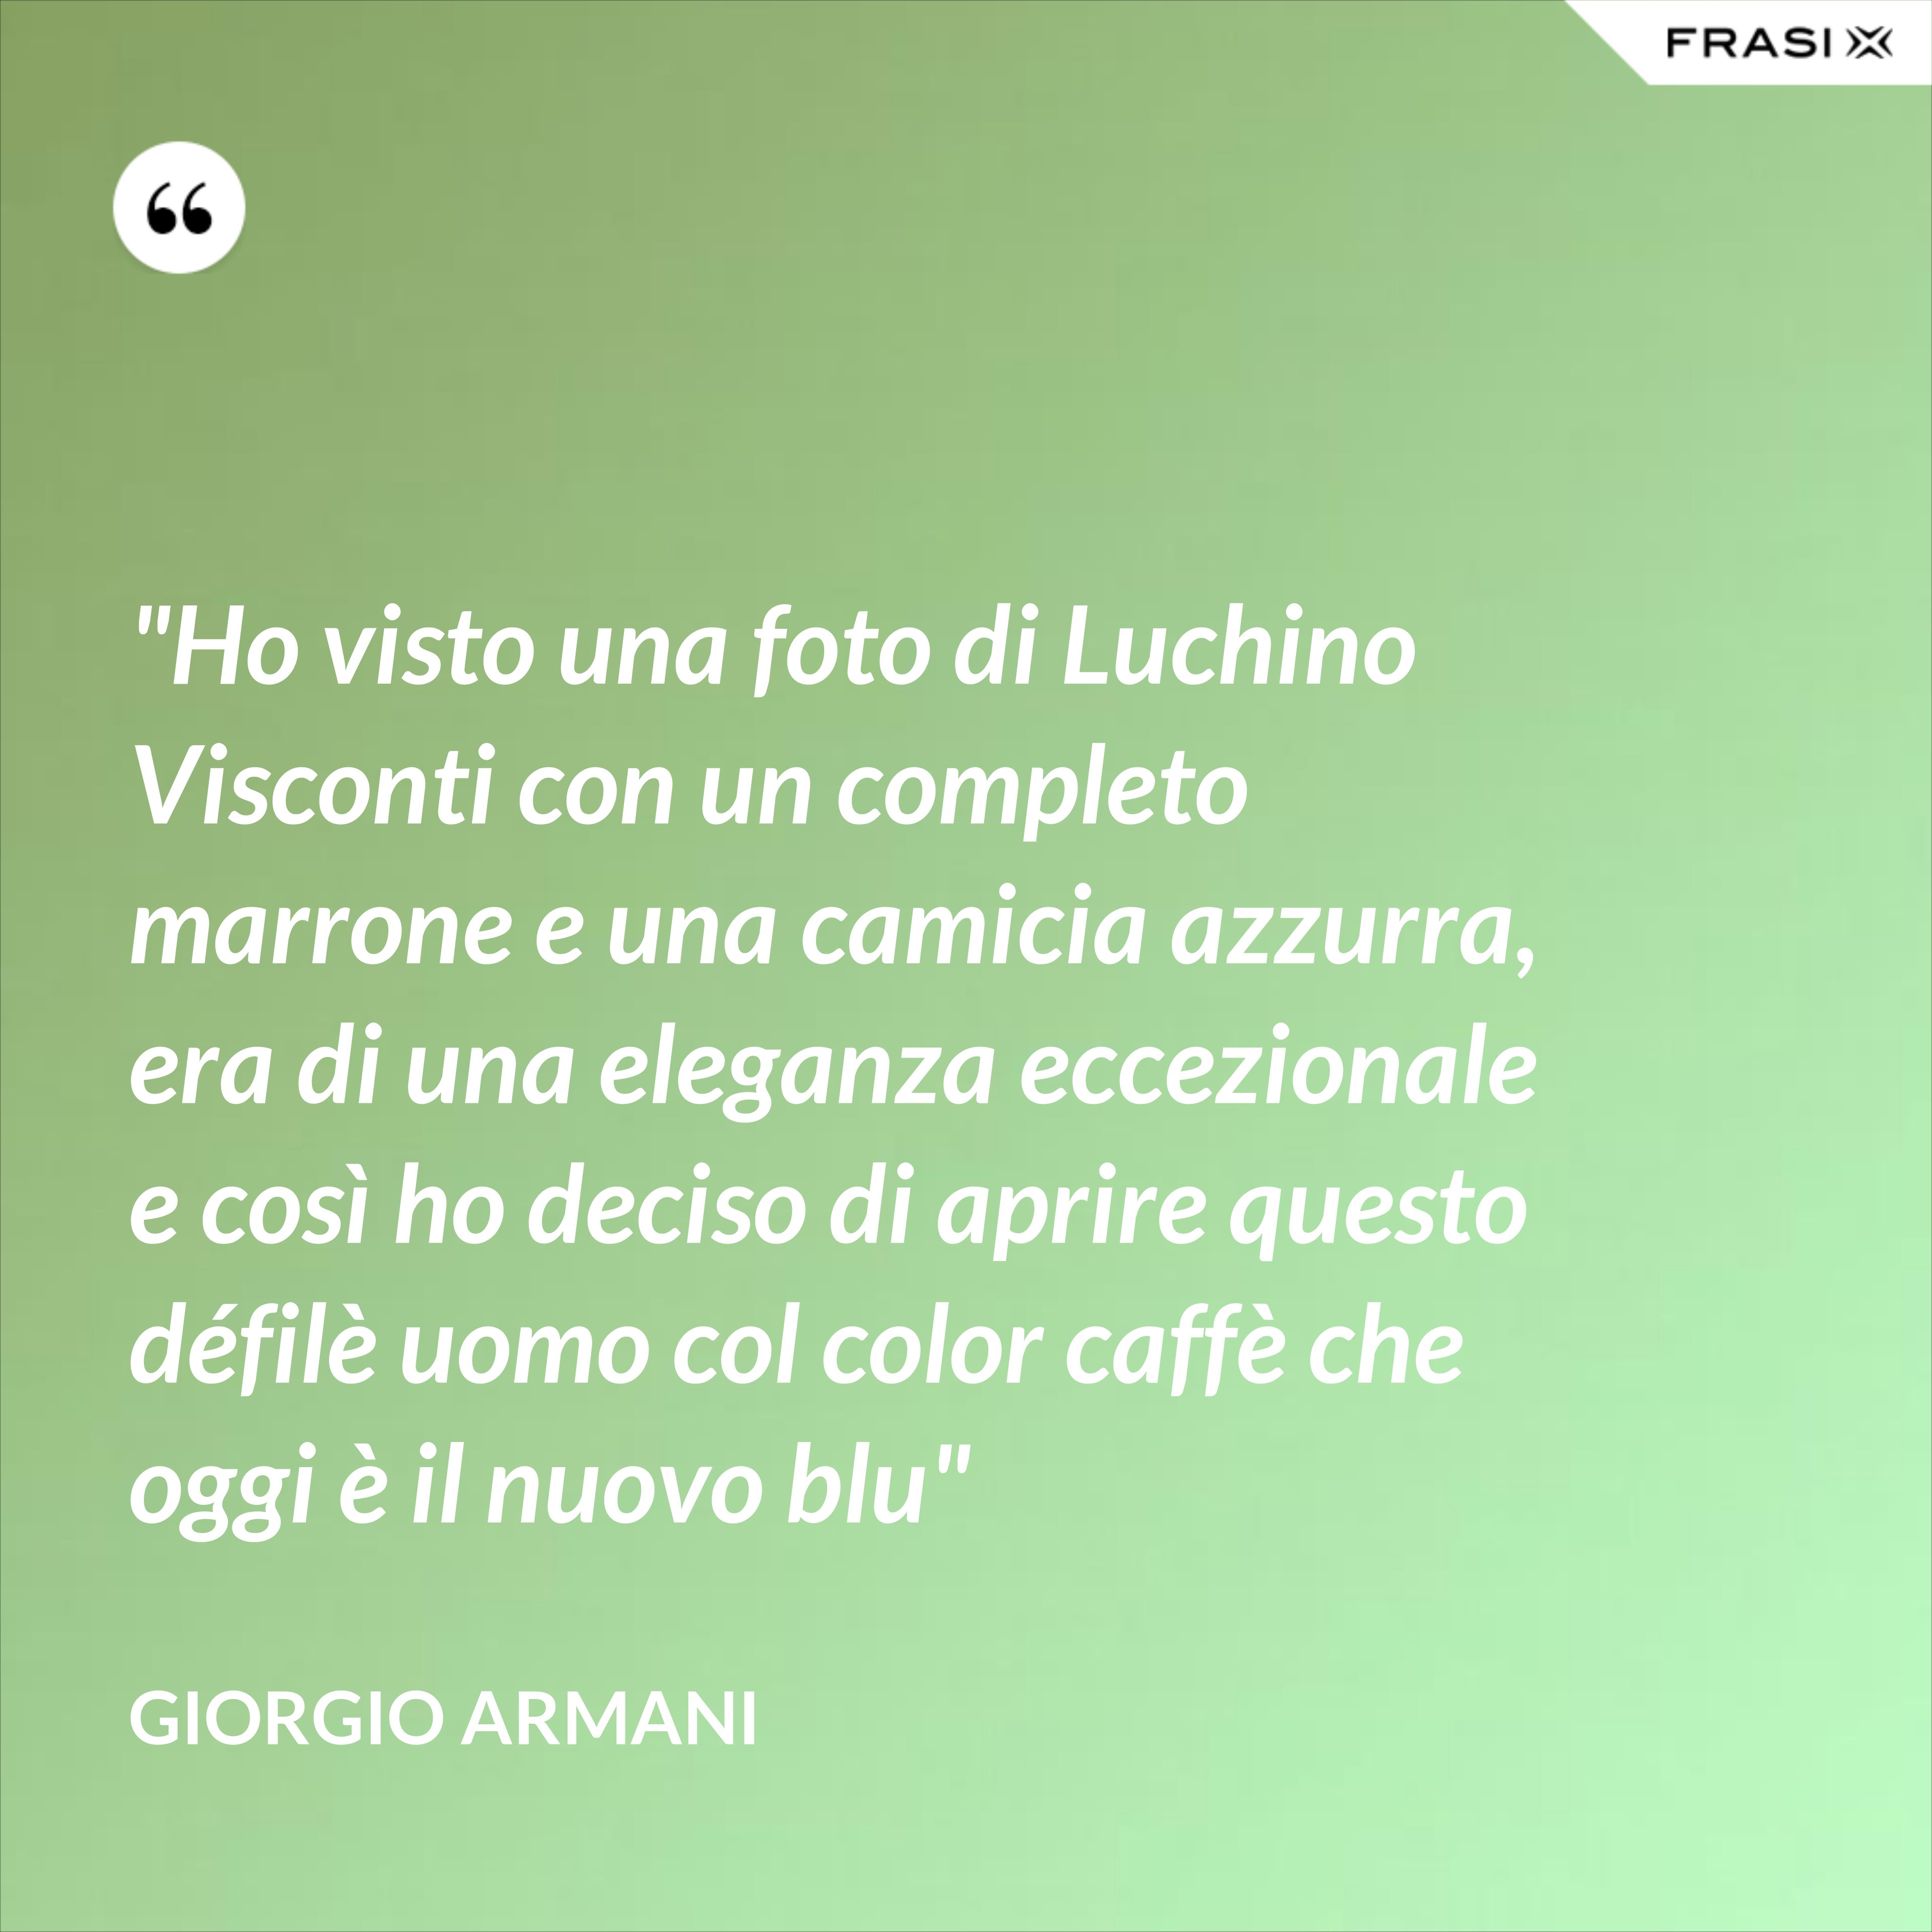 "Ho visto una foto di Luchino Visconti con un completo marrone e una camicia azzurra, era di una eleganza eccezionale e così ho deciso di aprire questo défilè uomo col color caffè che oggi è il nuovo blu" - Giorgio Armani